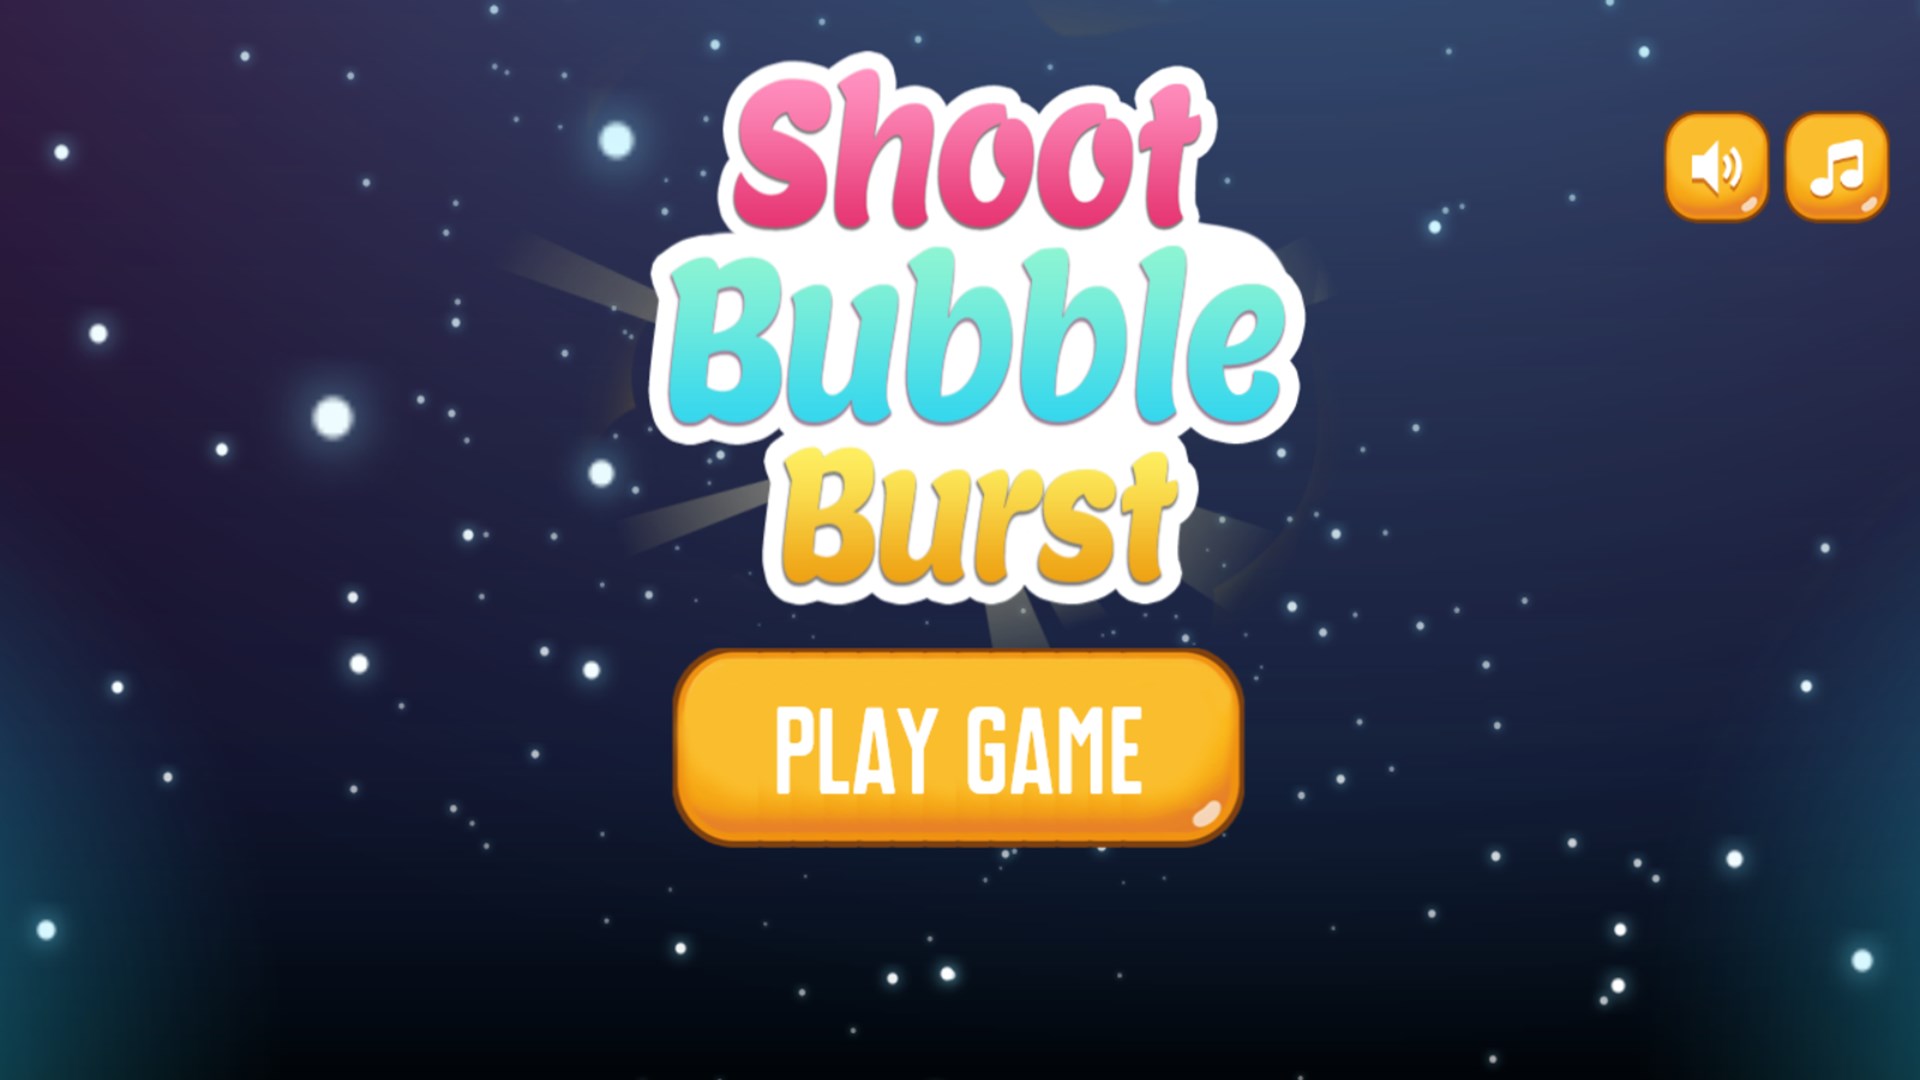 Get Shoot Bubble Burst